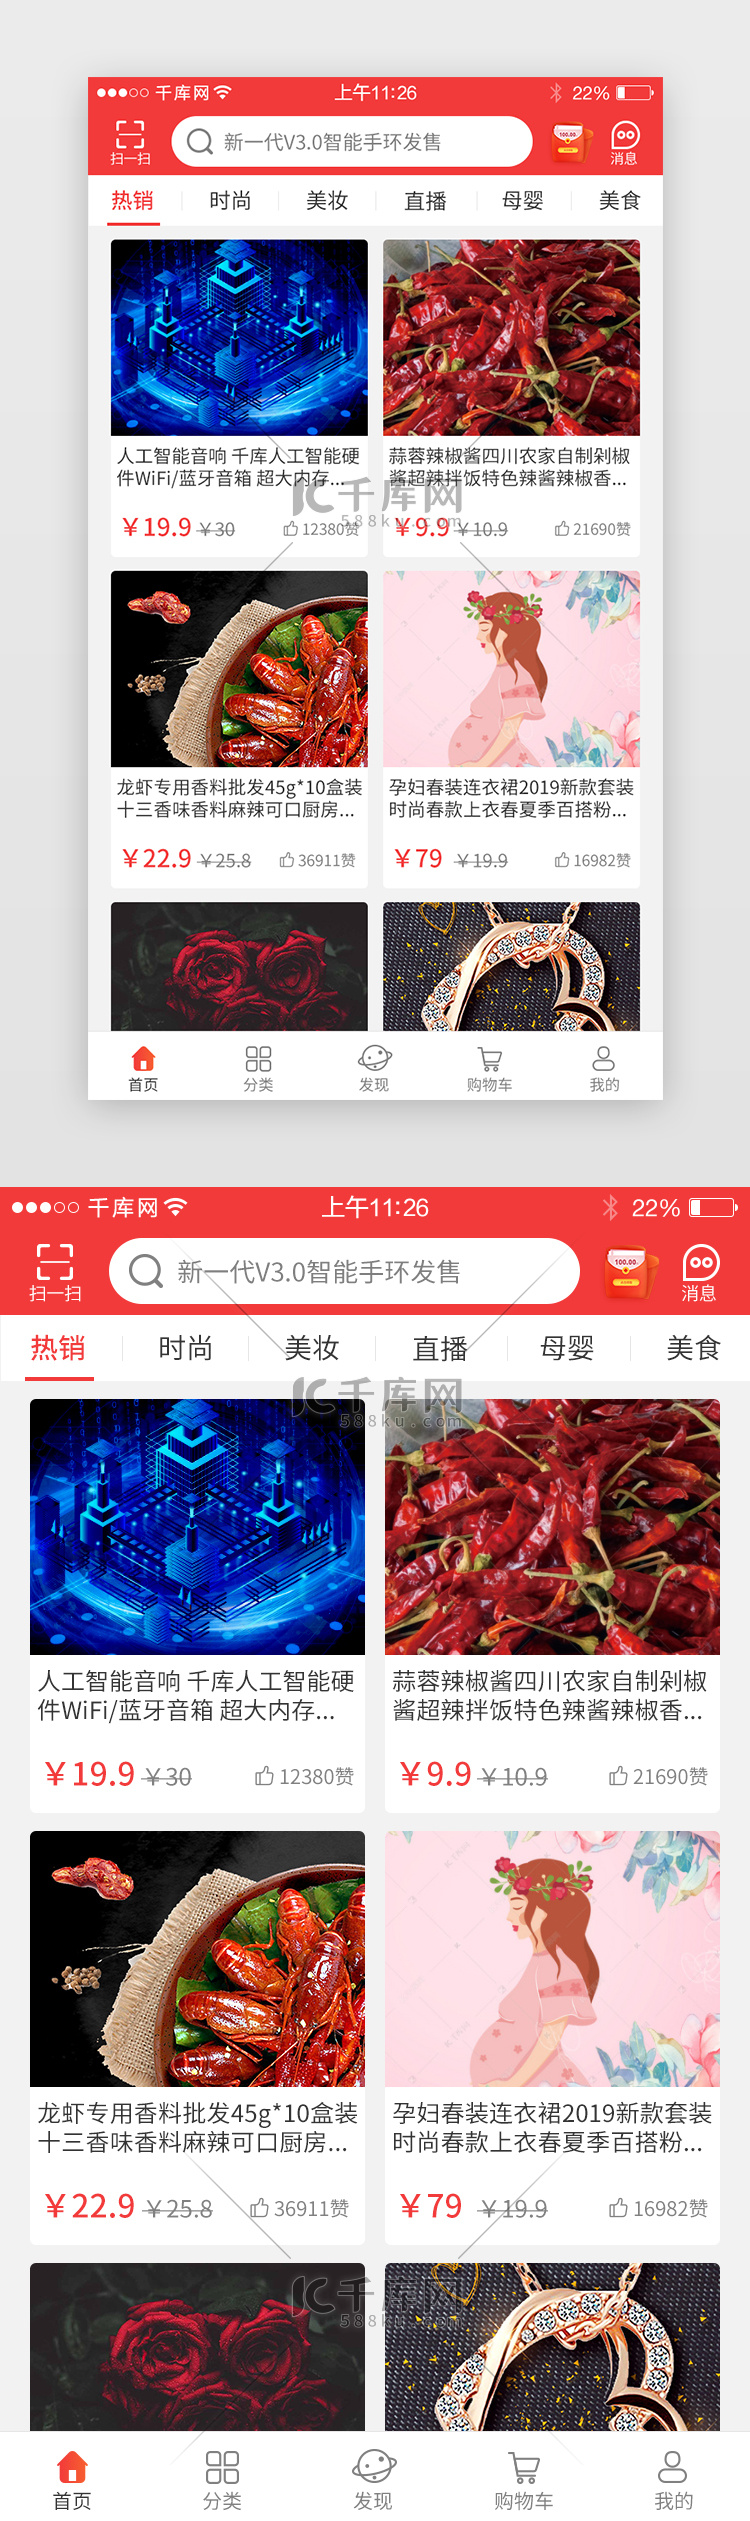 红色系综合电商app界面